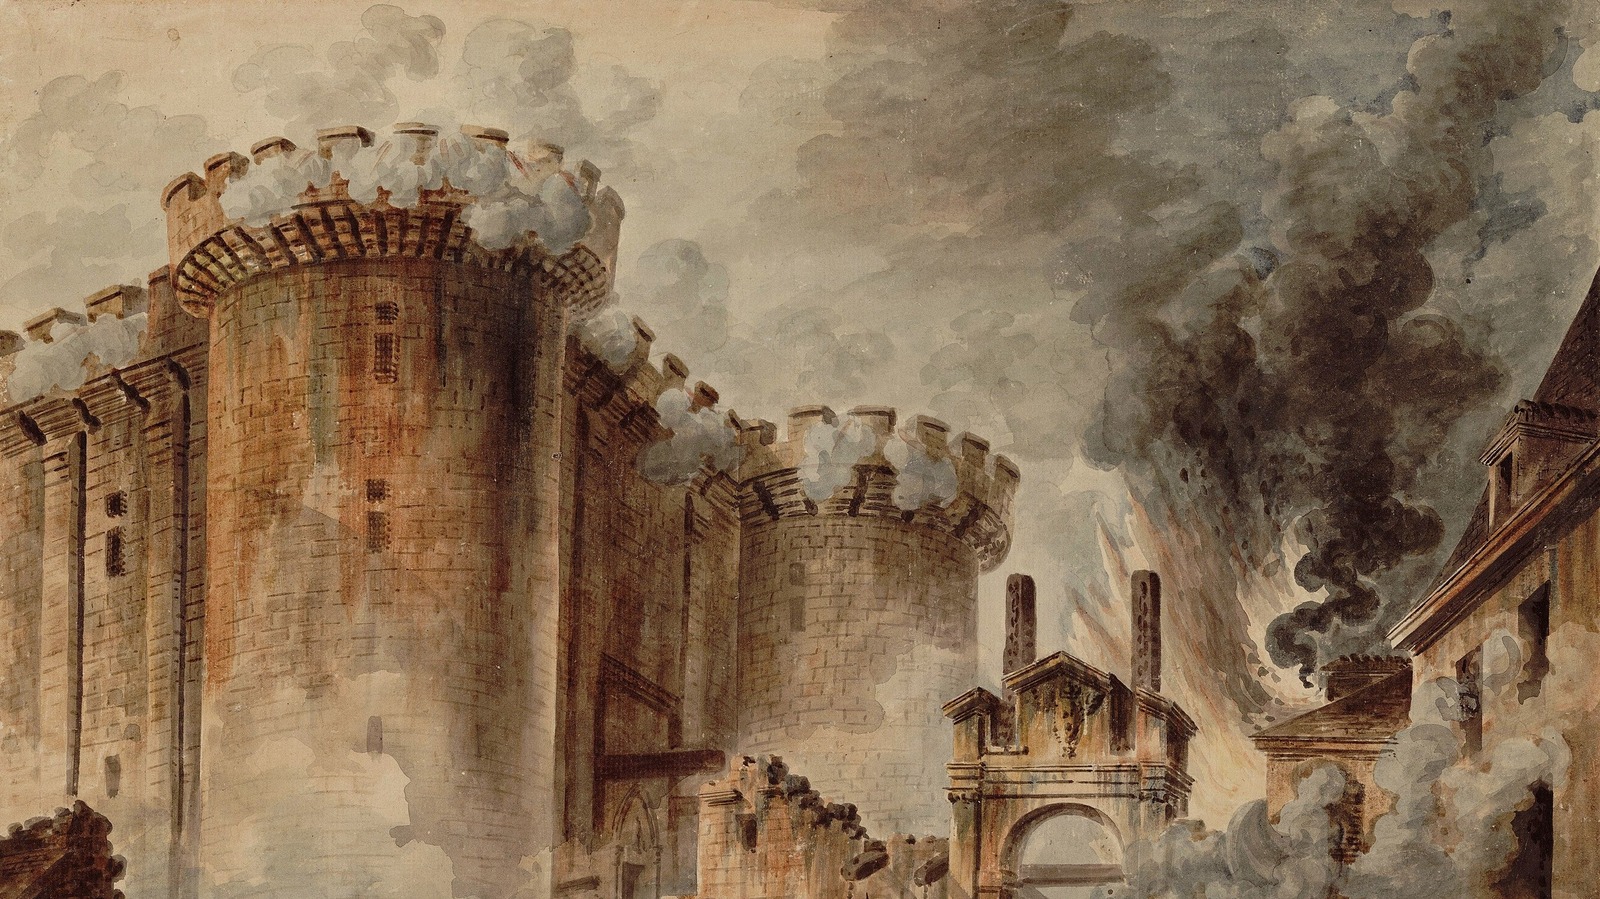 Революция 1789 1794. Крепость Бастилия в Париже. Бастилия французская революция. Крепость Бастилия 14 июля 1789. Французская революция взятие Бастилии 1789.